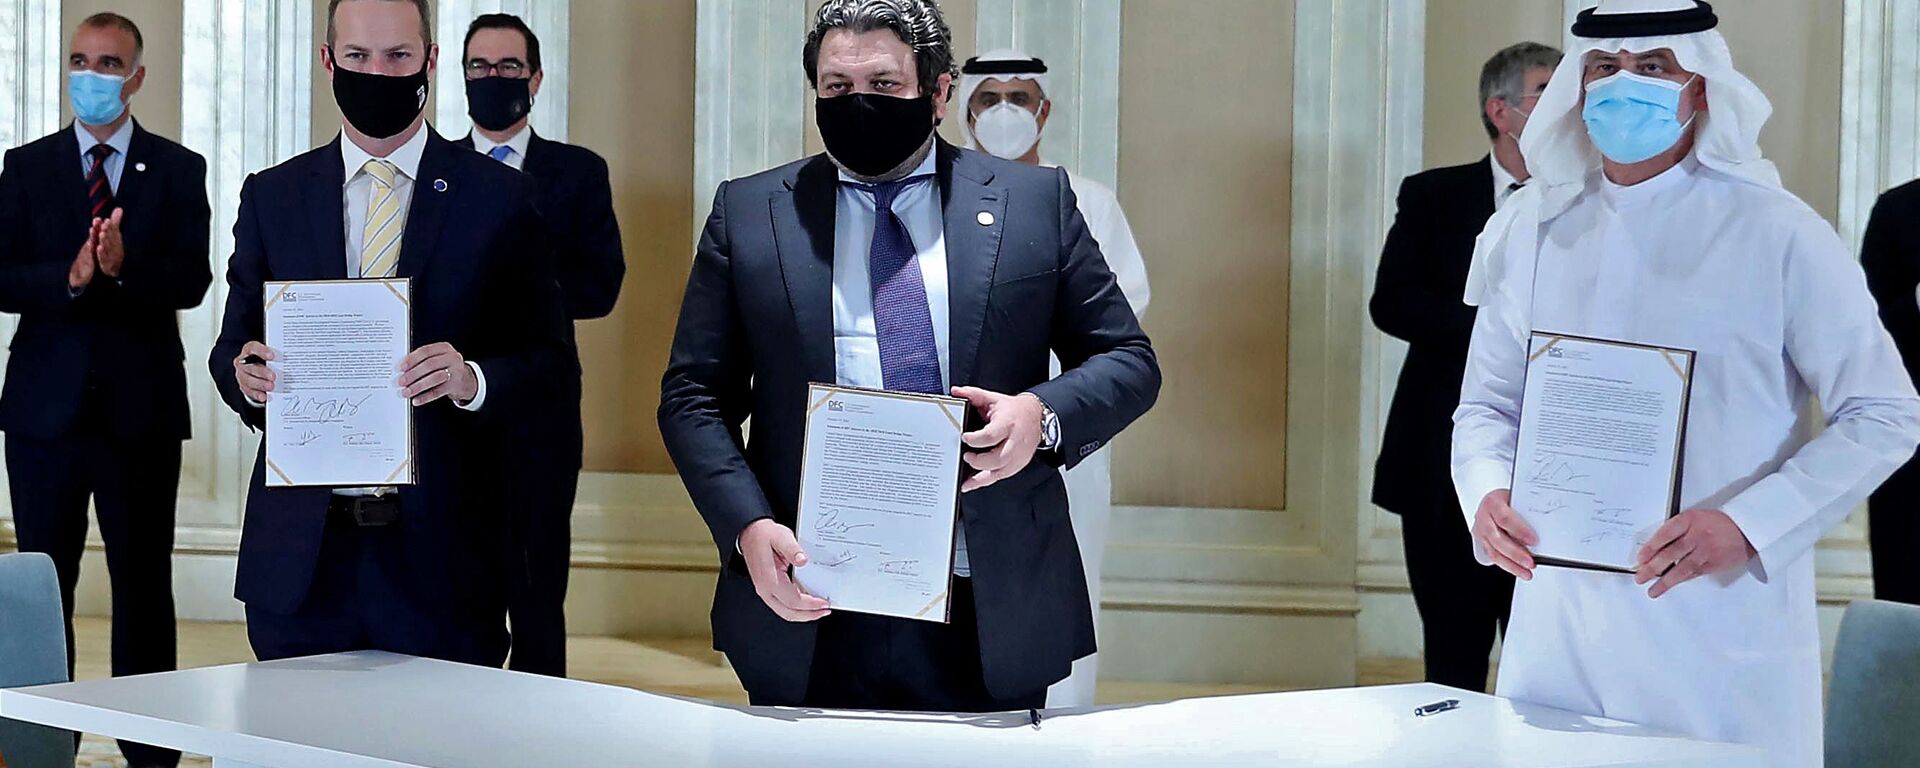 الإمارات و إسرائيل توقعان اتفاقية في أول قمة أعمال لـ اتفاقية أبراهام في أبو ظبي، الإمارات العربية المتحدة 19 أكتوبر 2020 بحضور وزير الخزانة الأمريكي ستيفن منوتشين.   - سبوتنيك عربي, 1920, 31.05.2021